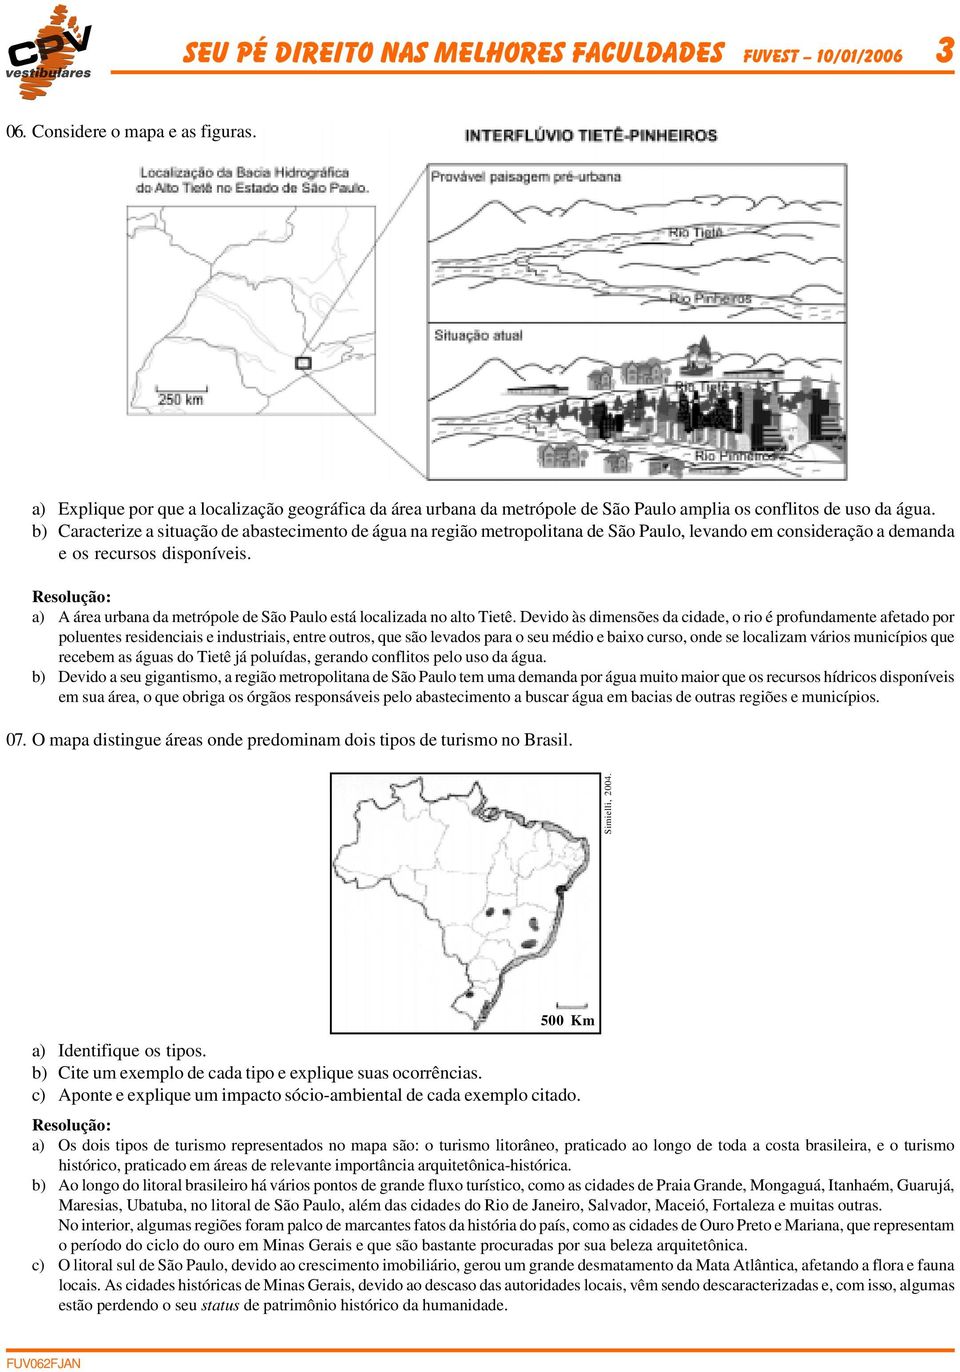 b) Caracterize a situação de abastecimento de água na região metropolitana de São Paulo, levando em consideração a demanda e os recursos disponíveis.